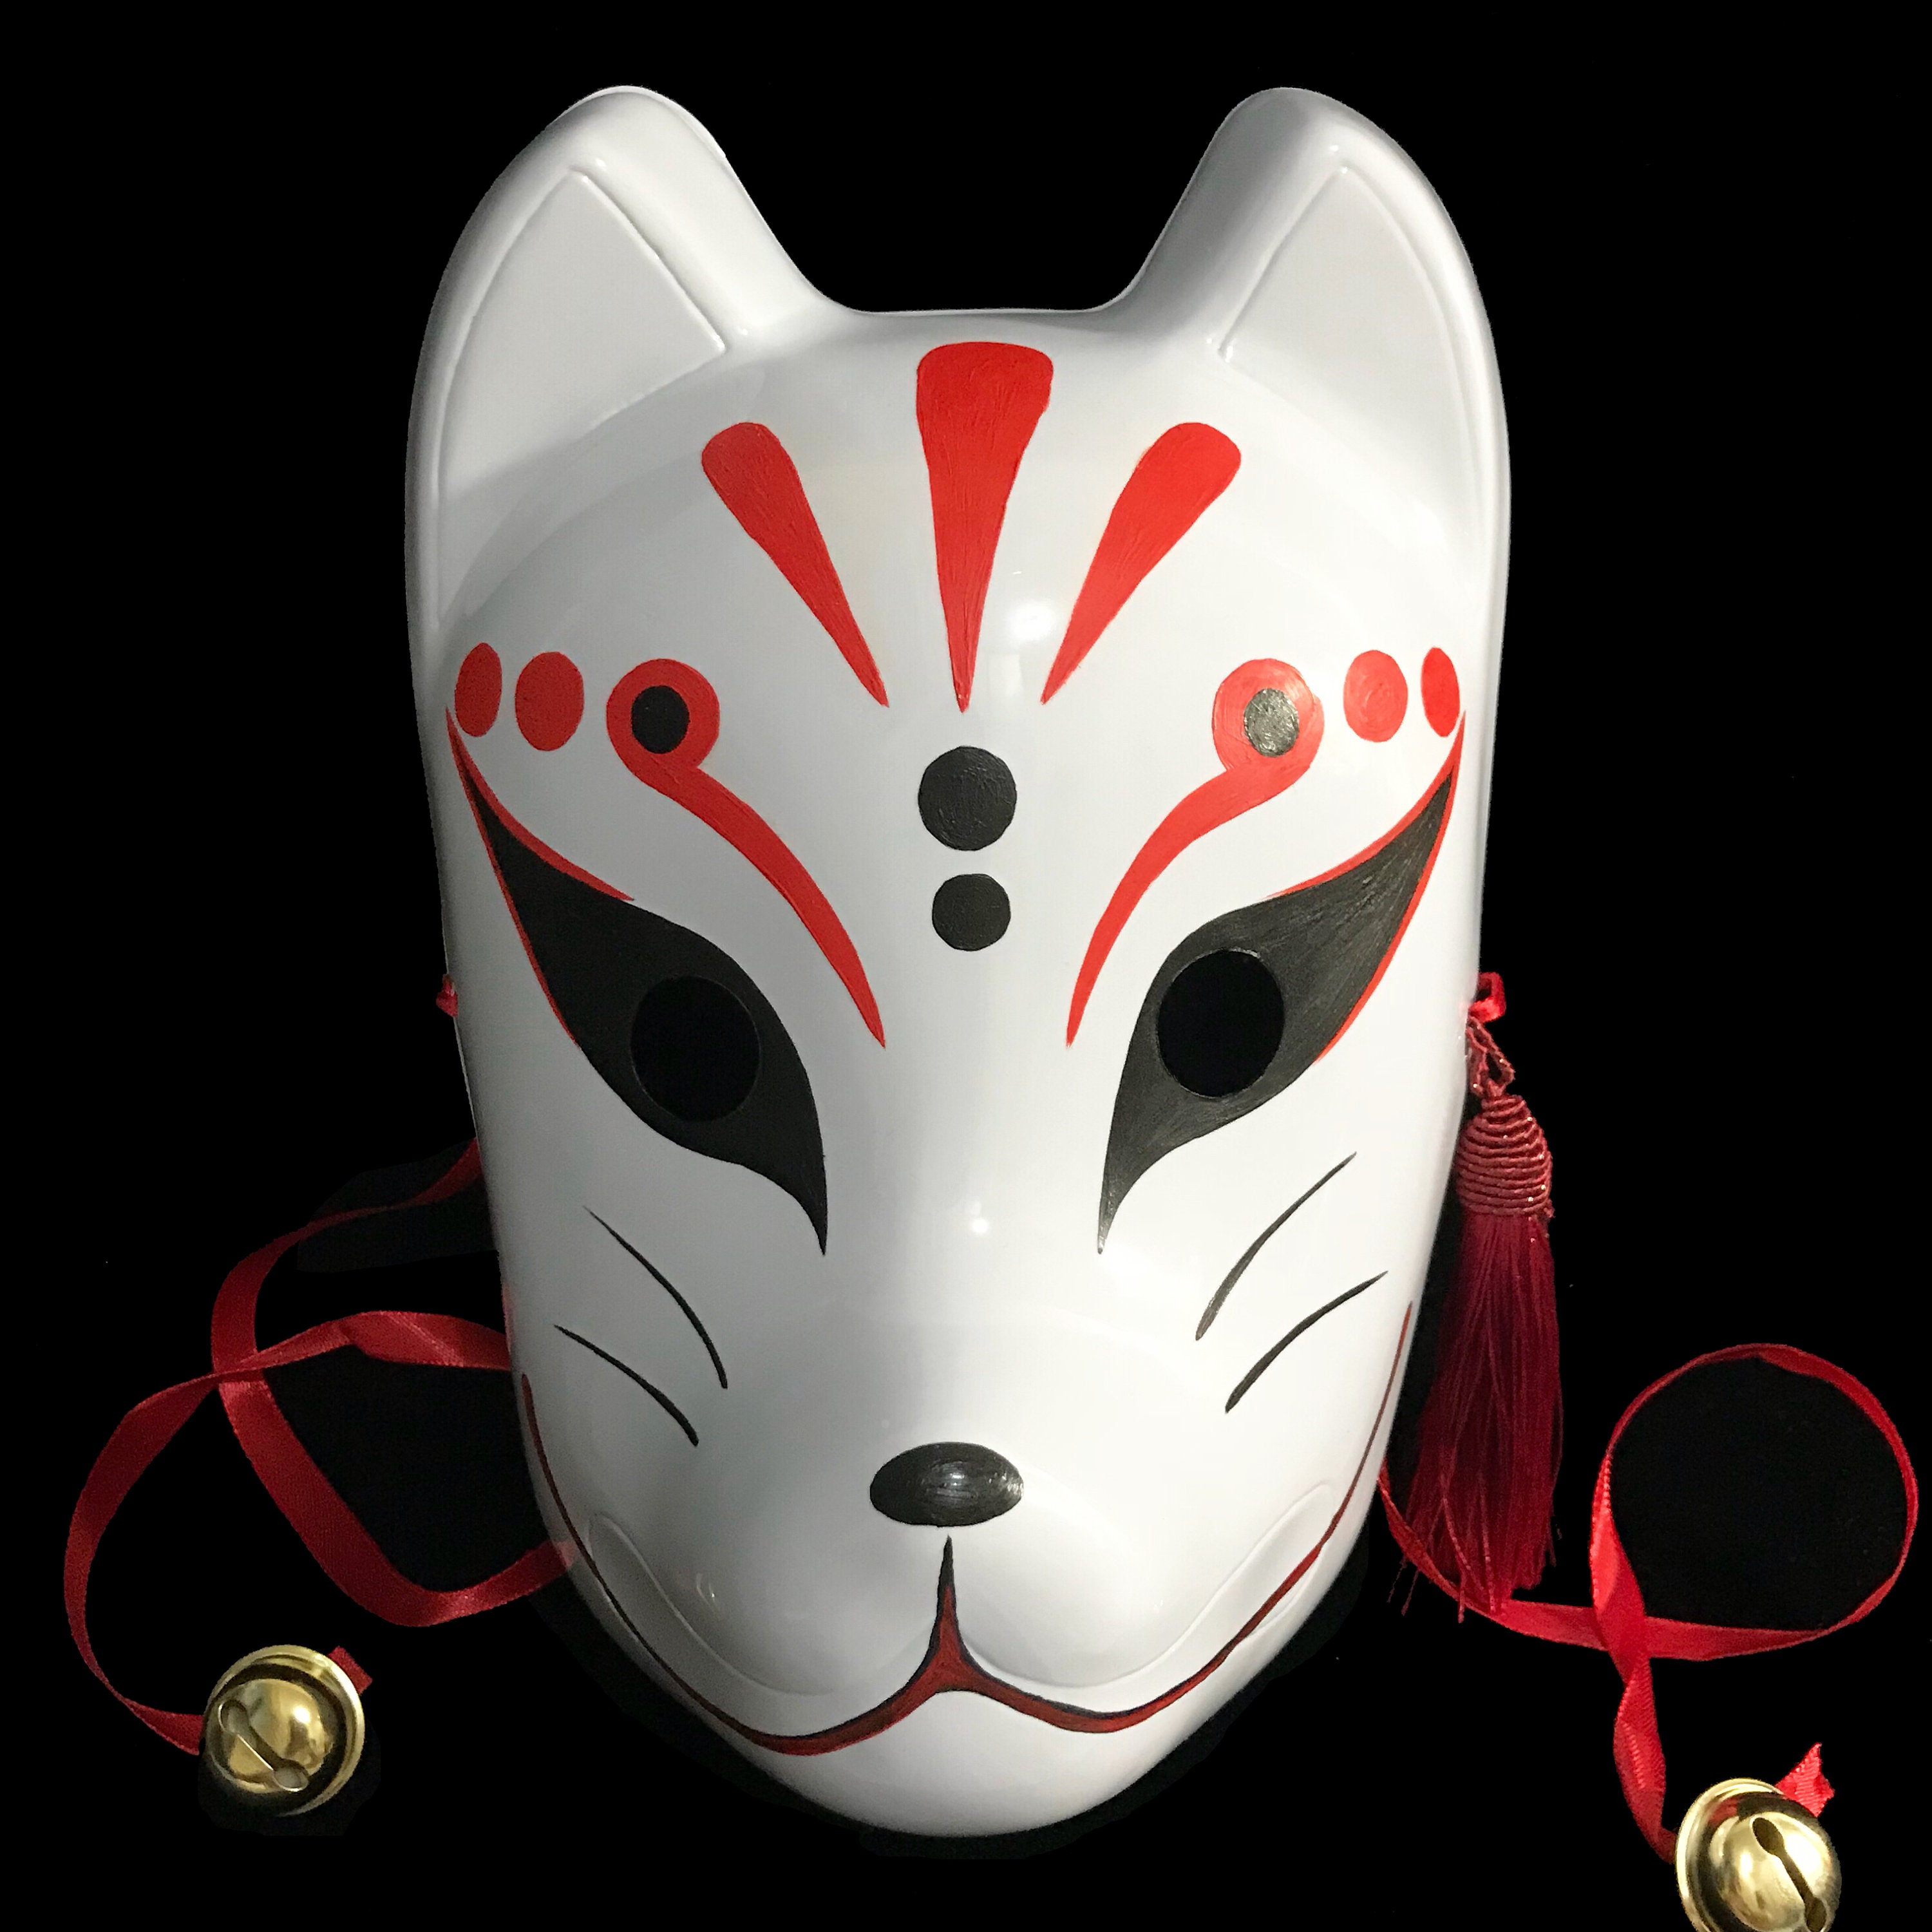 gettare sabbia negli occhi Corazzata Cusco japanese kitsune mask ...